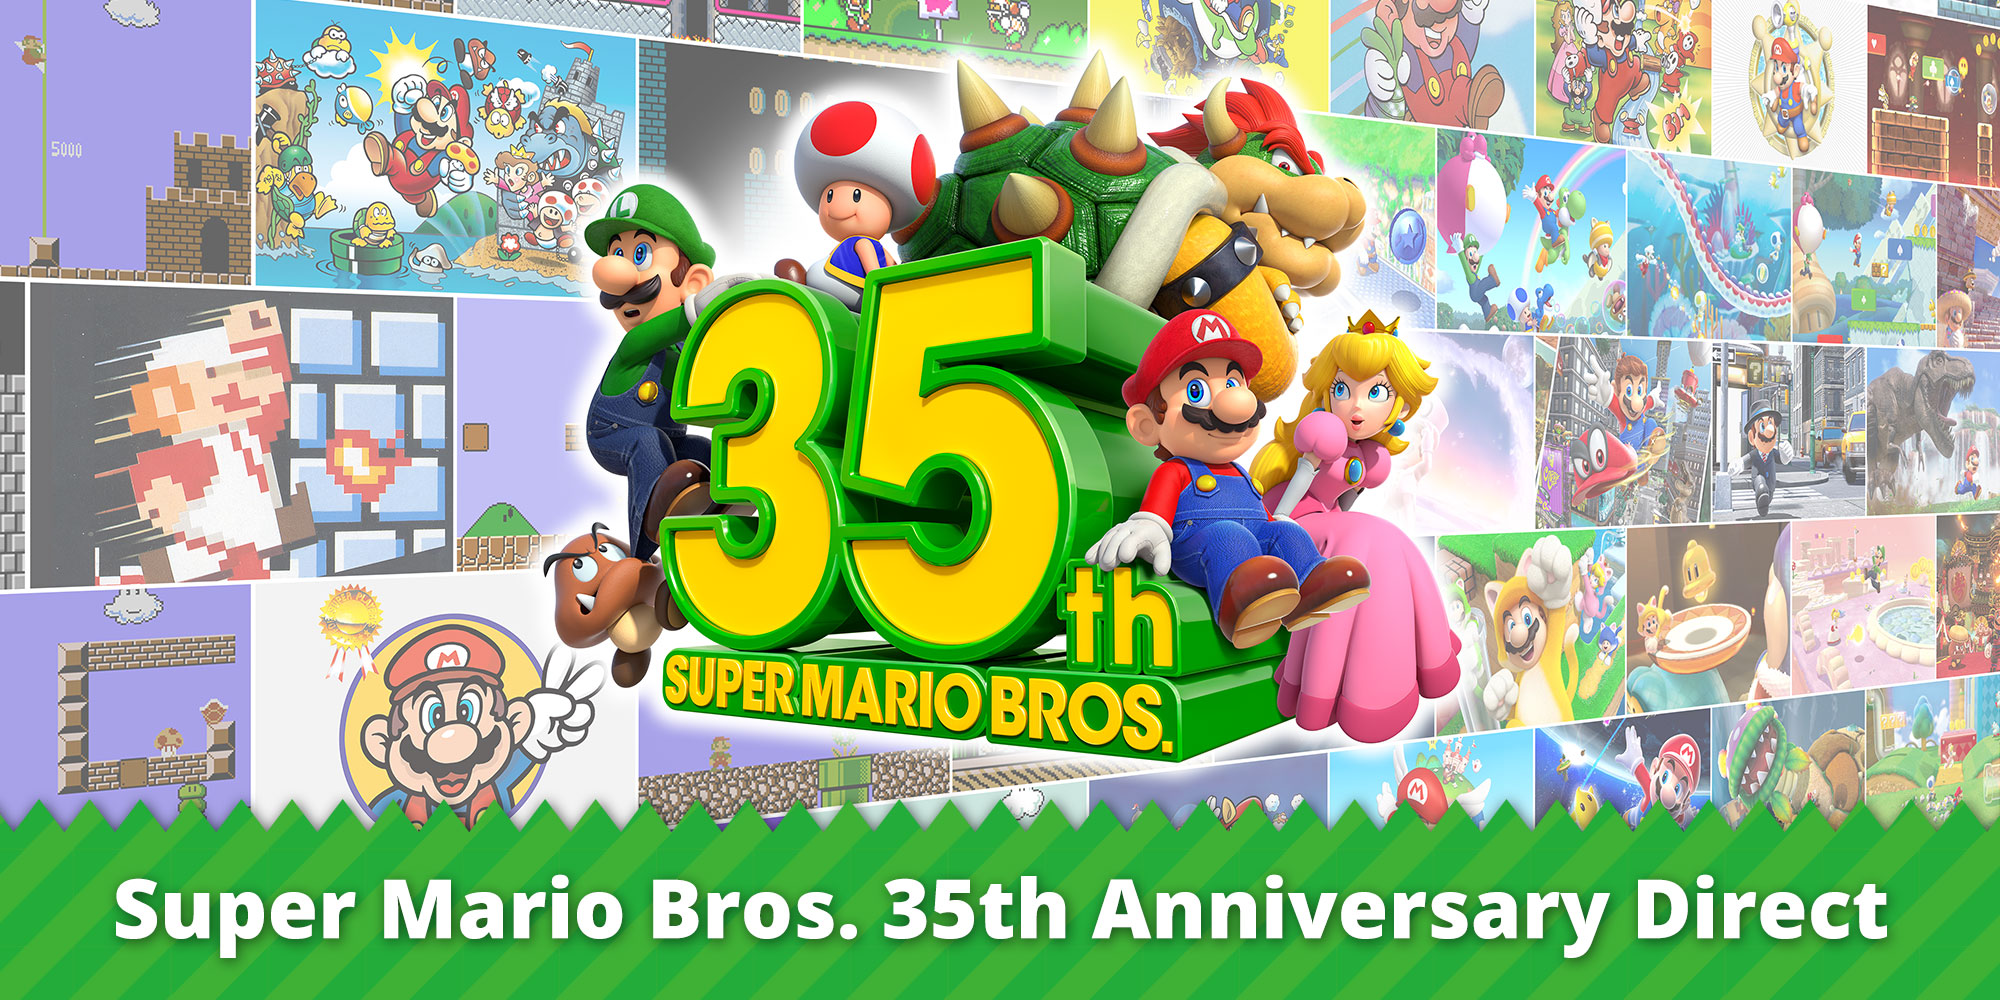 Celebrate the 35th anniversary of Super Mario Bros